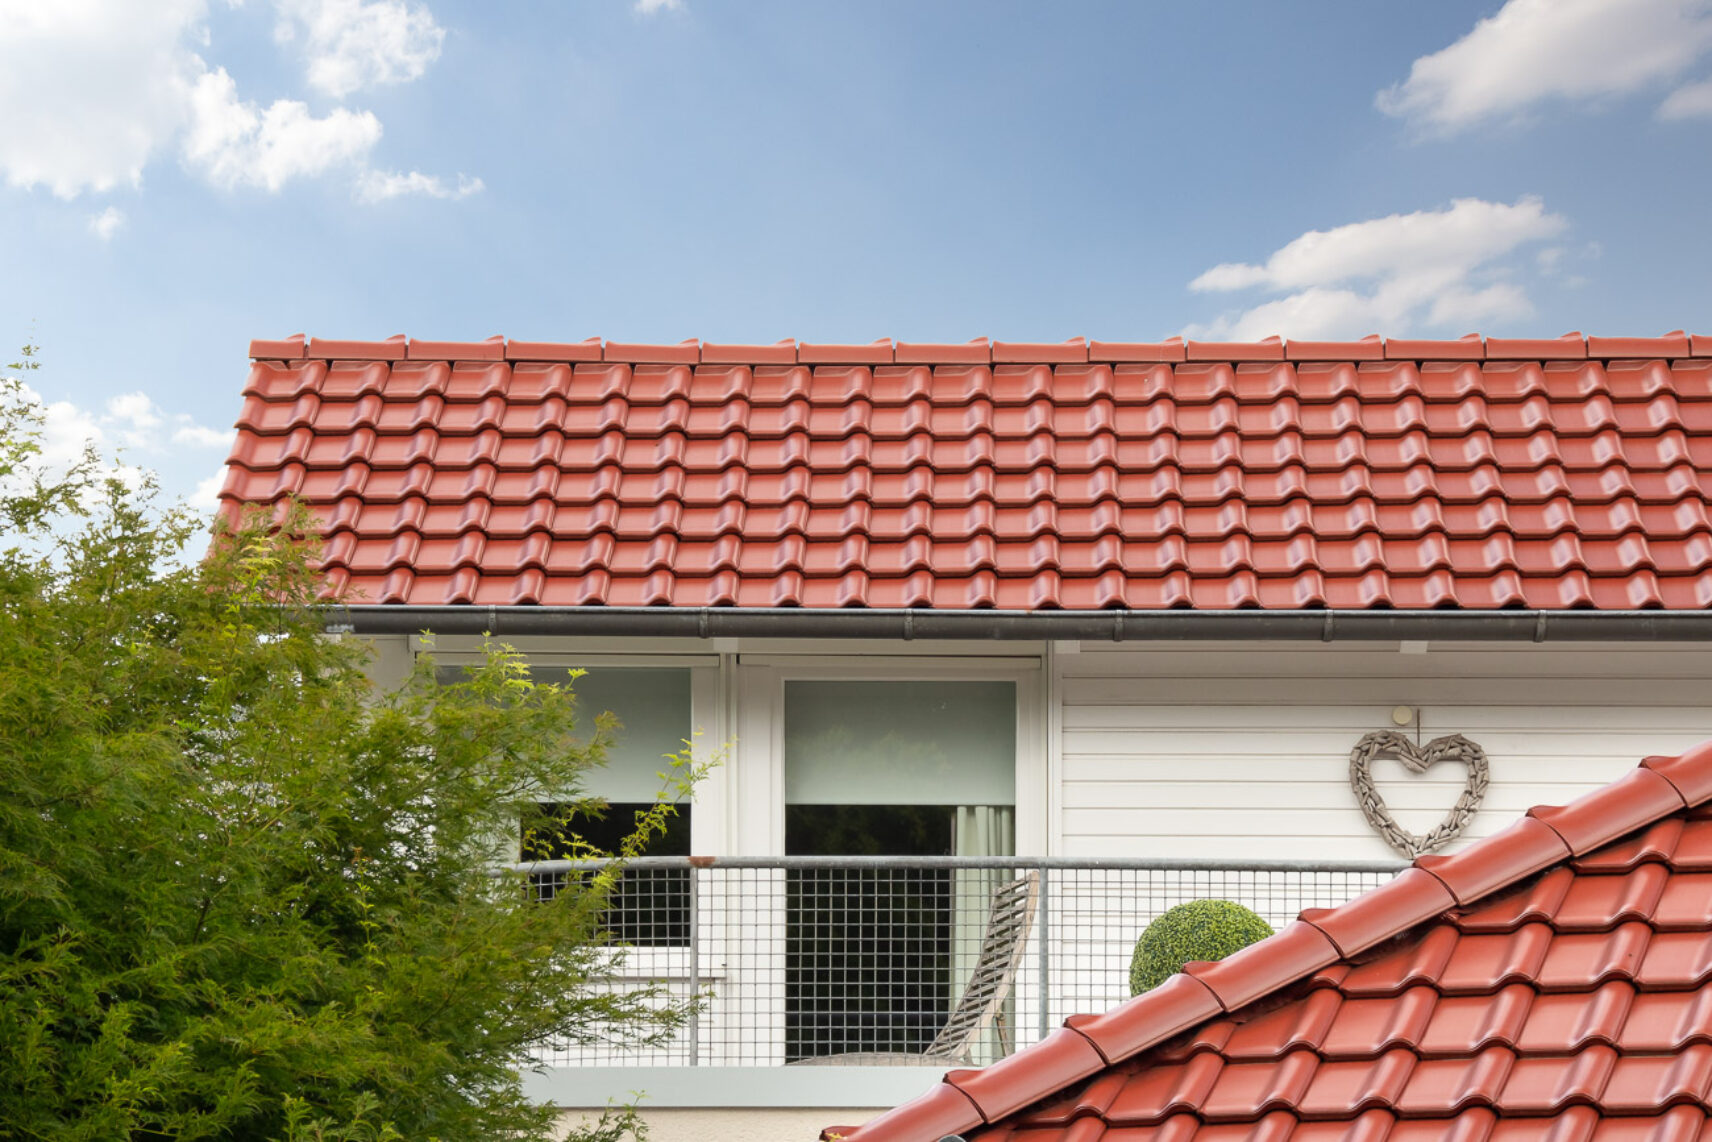 Einfamilienhaus mit Satteldach und Dachziegel J11v in toskanarot matt. Der Bildfokus liegt den First und Deckbild